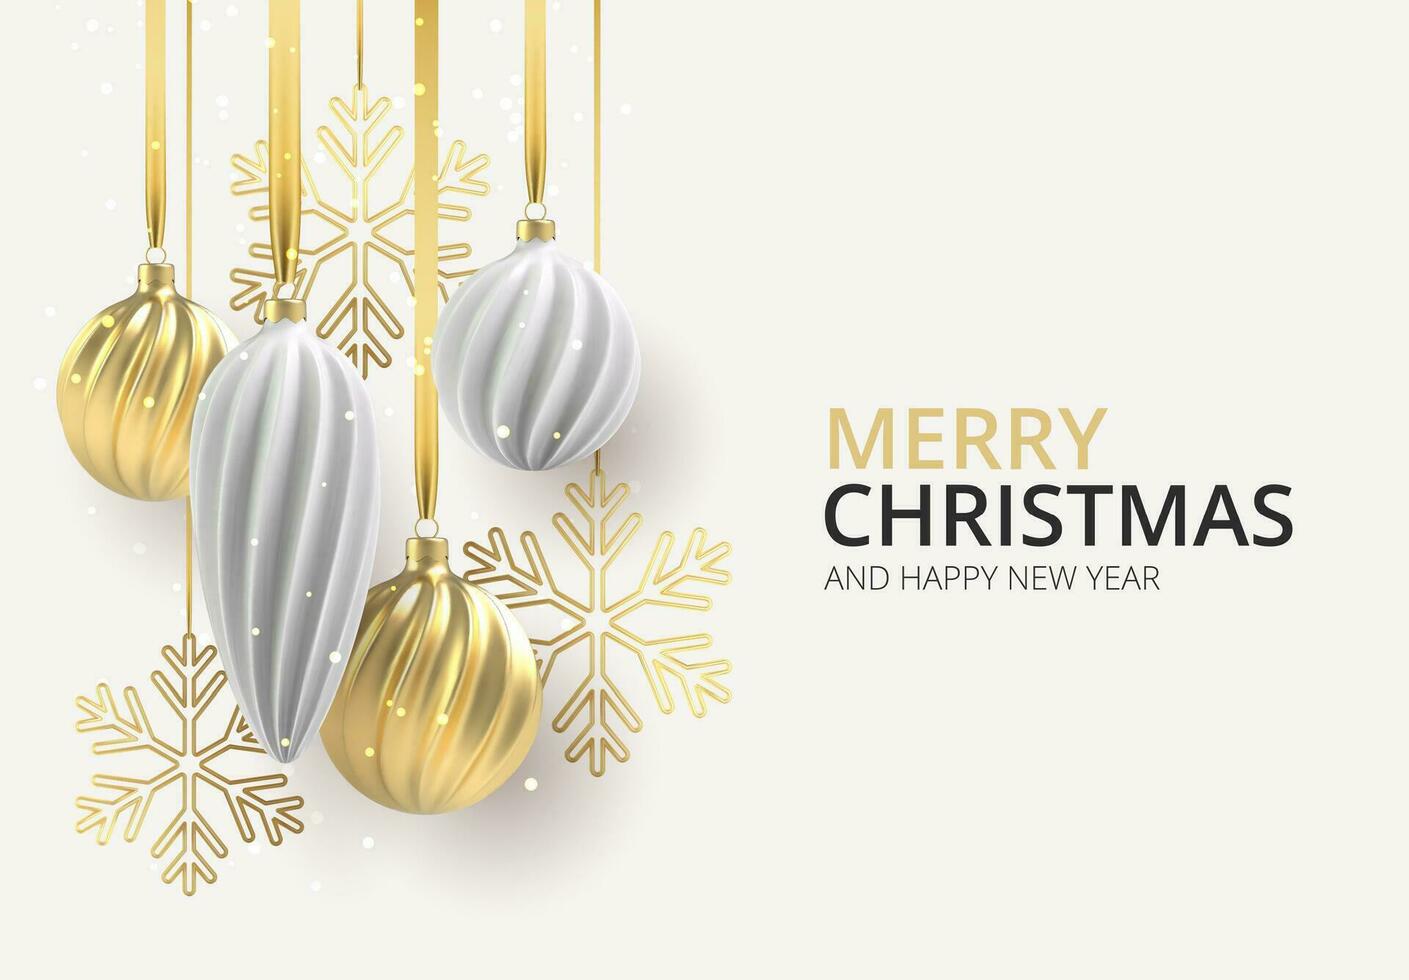 Natal fundo com Natal árvore brinquedos do branco e ouro, uma espiral bolas e flocos de neve em branco horizontal fundo, com a inscrição Natal. vetor ilustração.